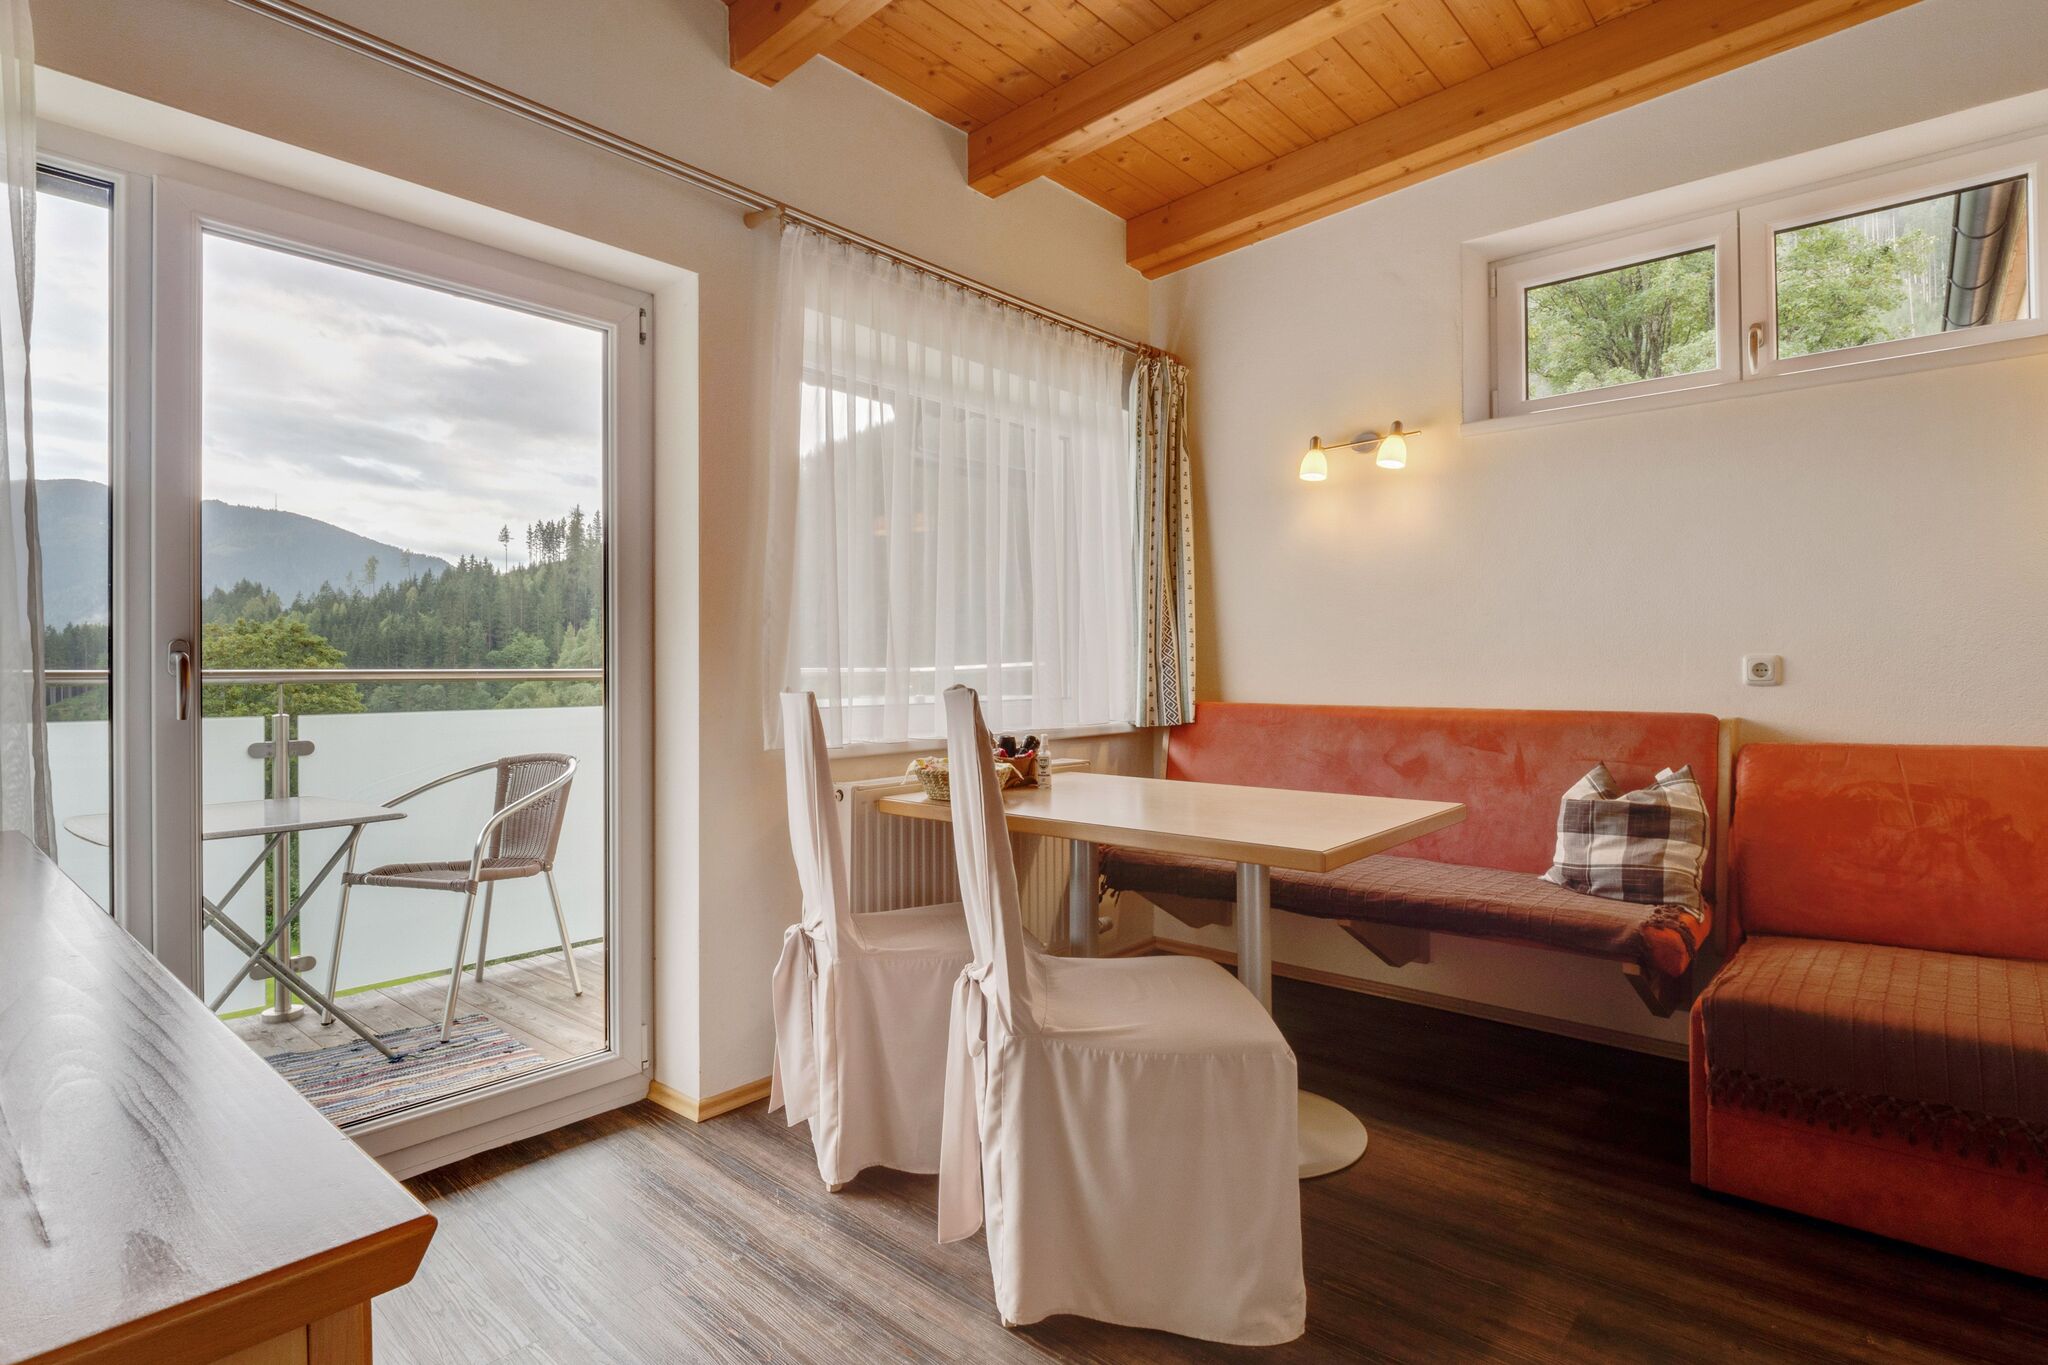 Gezellig vakantieappartement in Zell am See met balkon vlakbij het skigebied